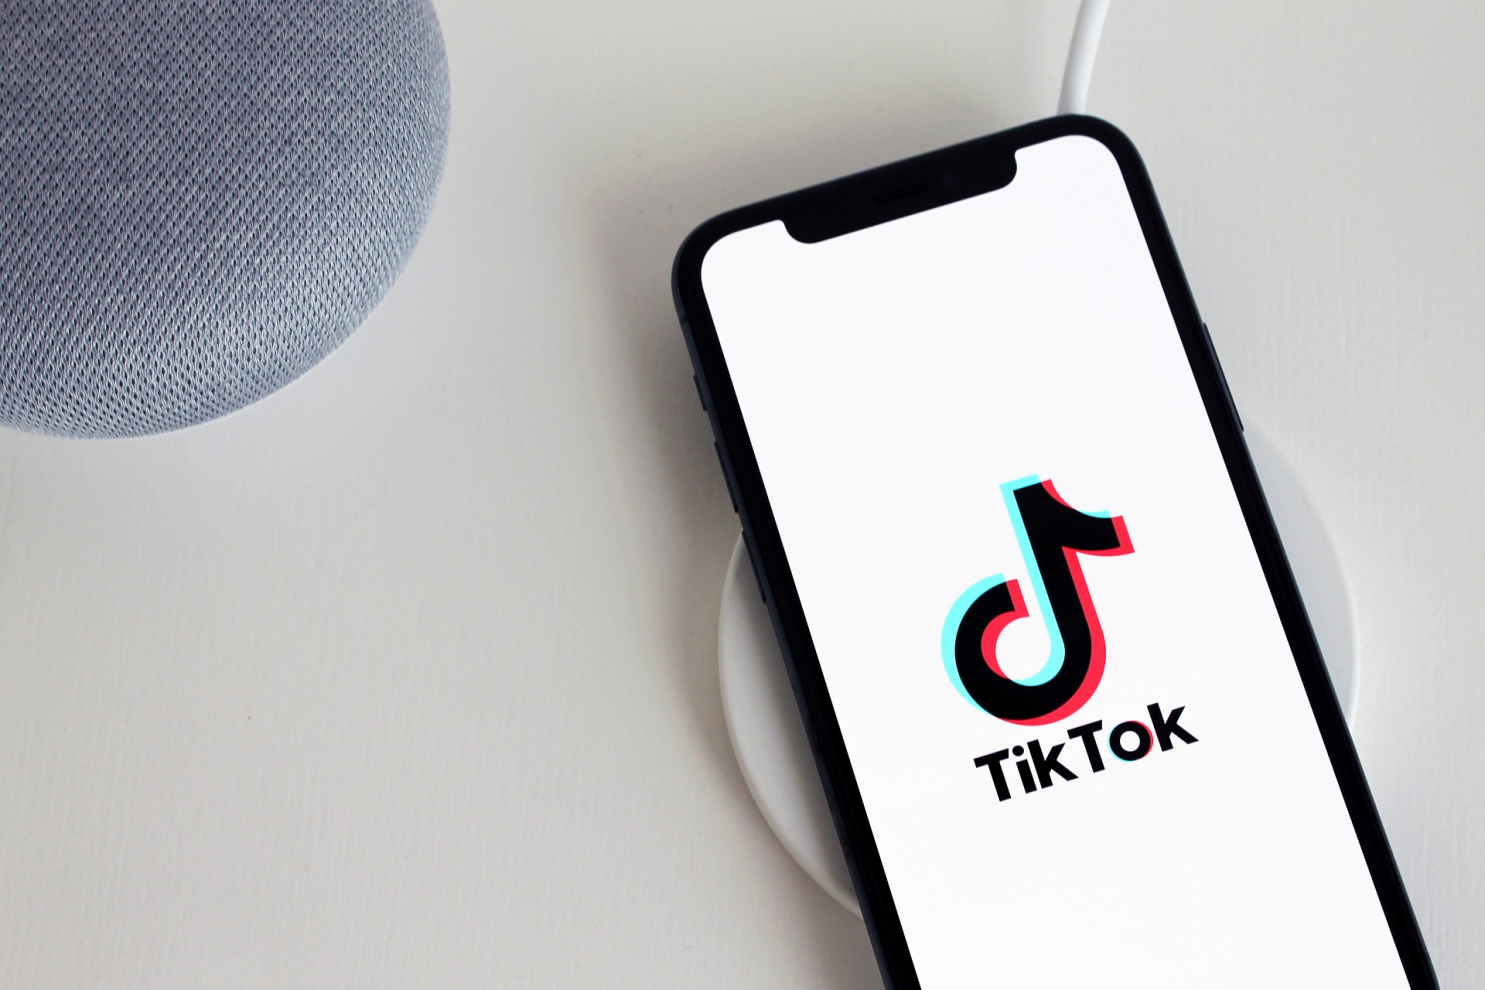 TikTok bị Thổ Nhĩ Kỳ xử phạt 93.000 USD vì chưa có biện pháp bảo vệ dữ liệu người dùng